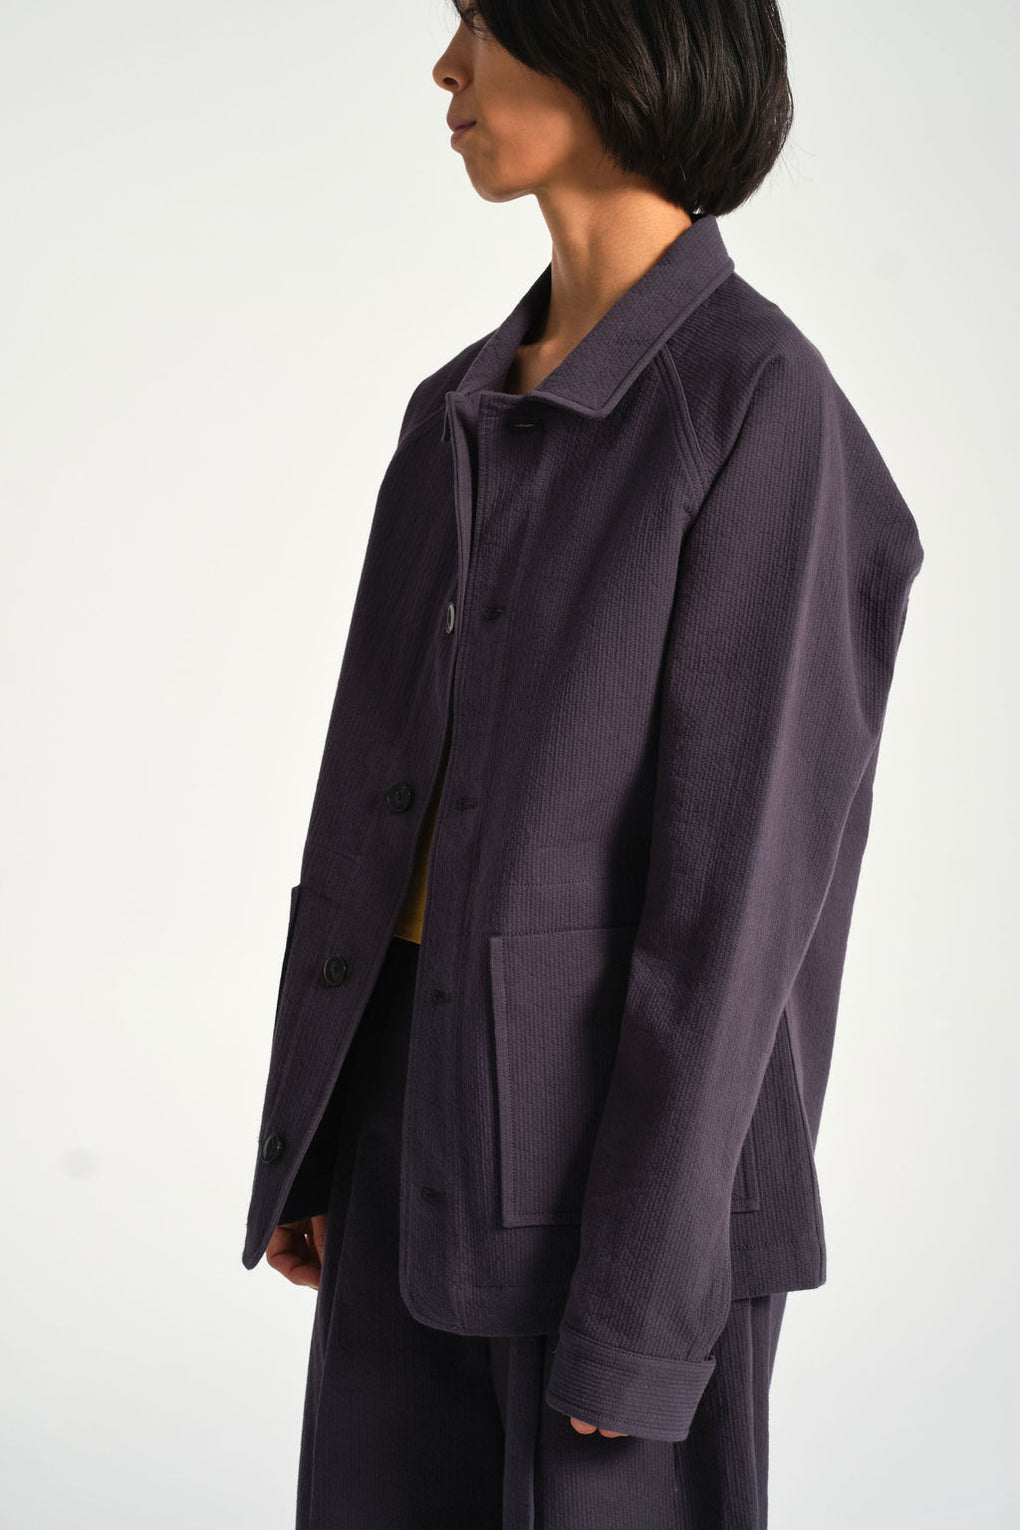 7115 by Szeki - Chore Jacket - blue unisex jacket - Idun - St. Paul